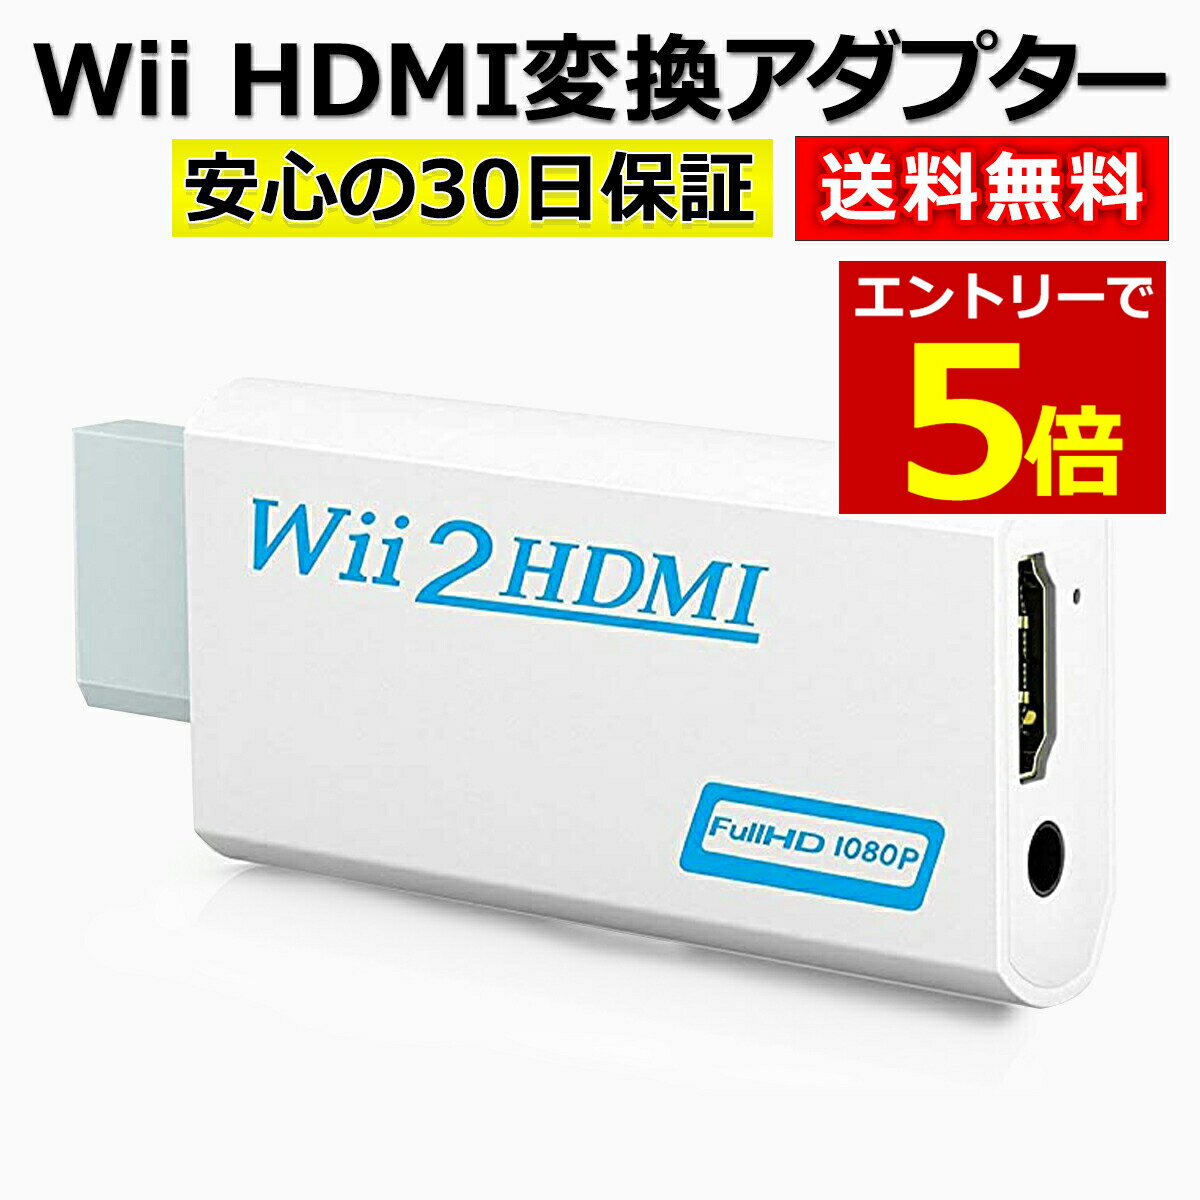 【6/1当店エントリーでP最大5倍!】Wii HDMI 変換 アダプター コンバーター HDMI接続 ウィー 任天堂 hdmi 接続 コネクター テレビ 変換アダプター